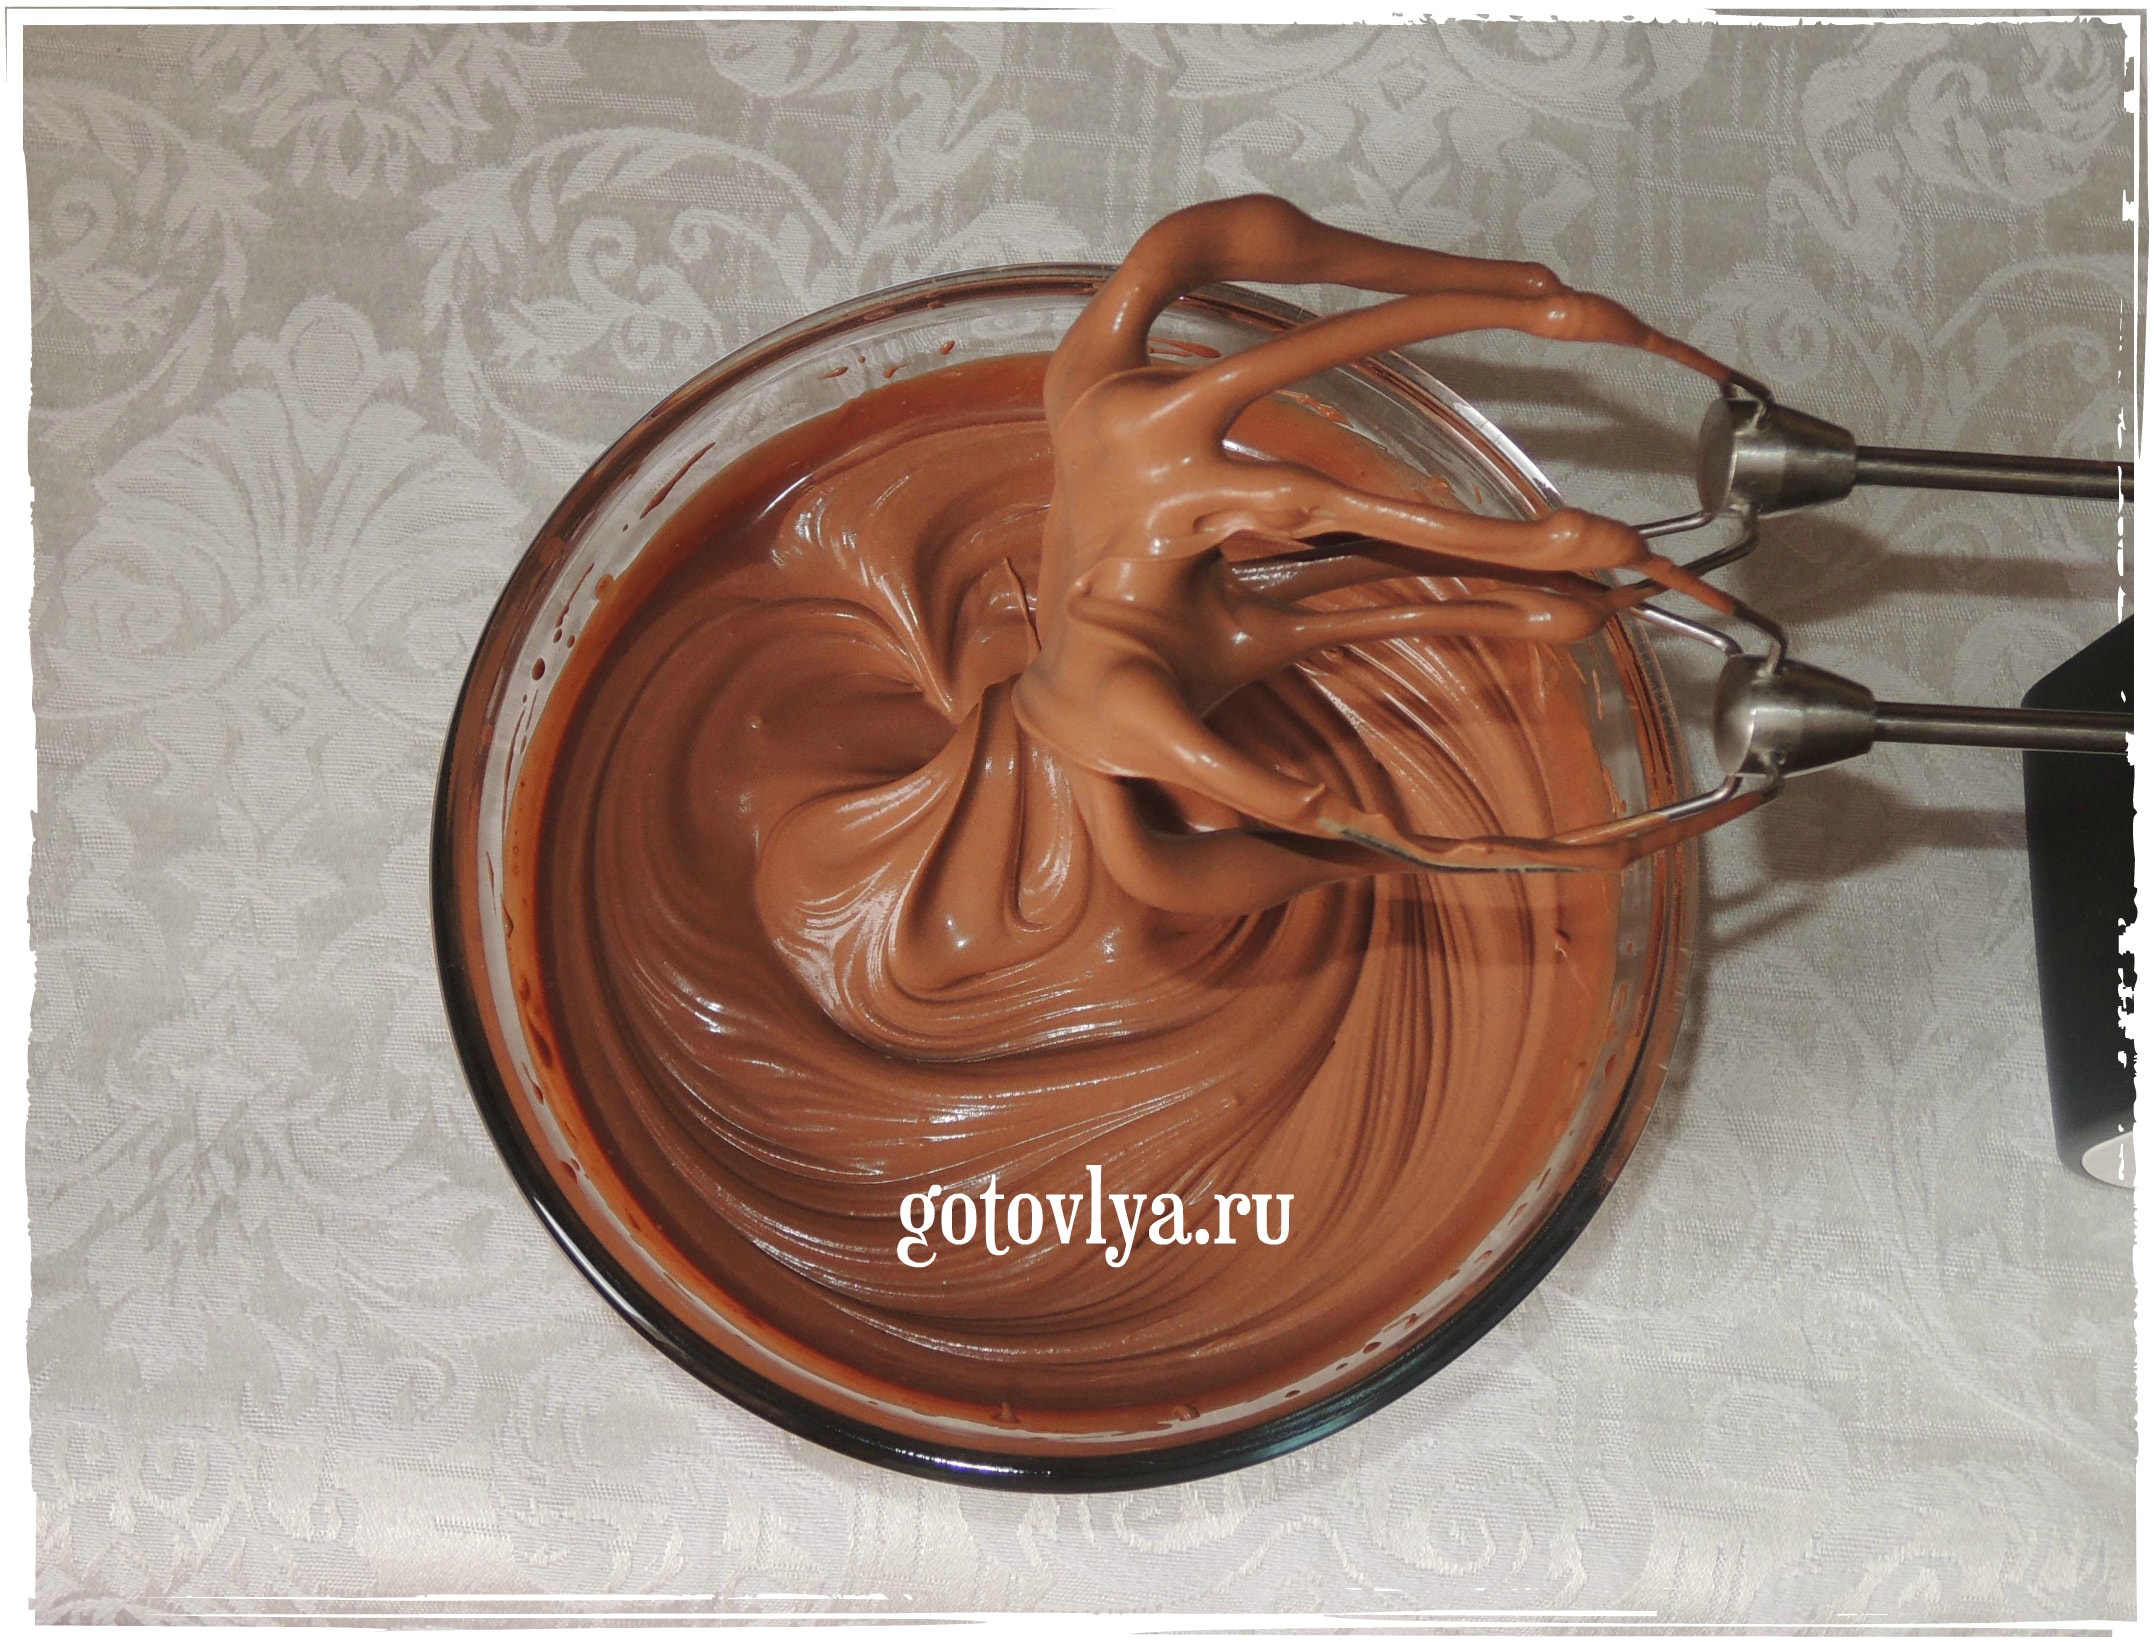 Рецепт шоколадного крема для торта с фото